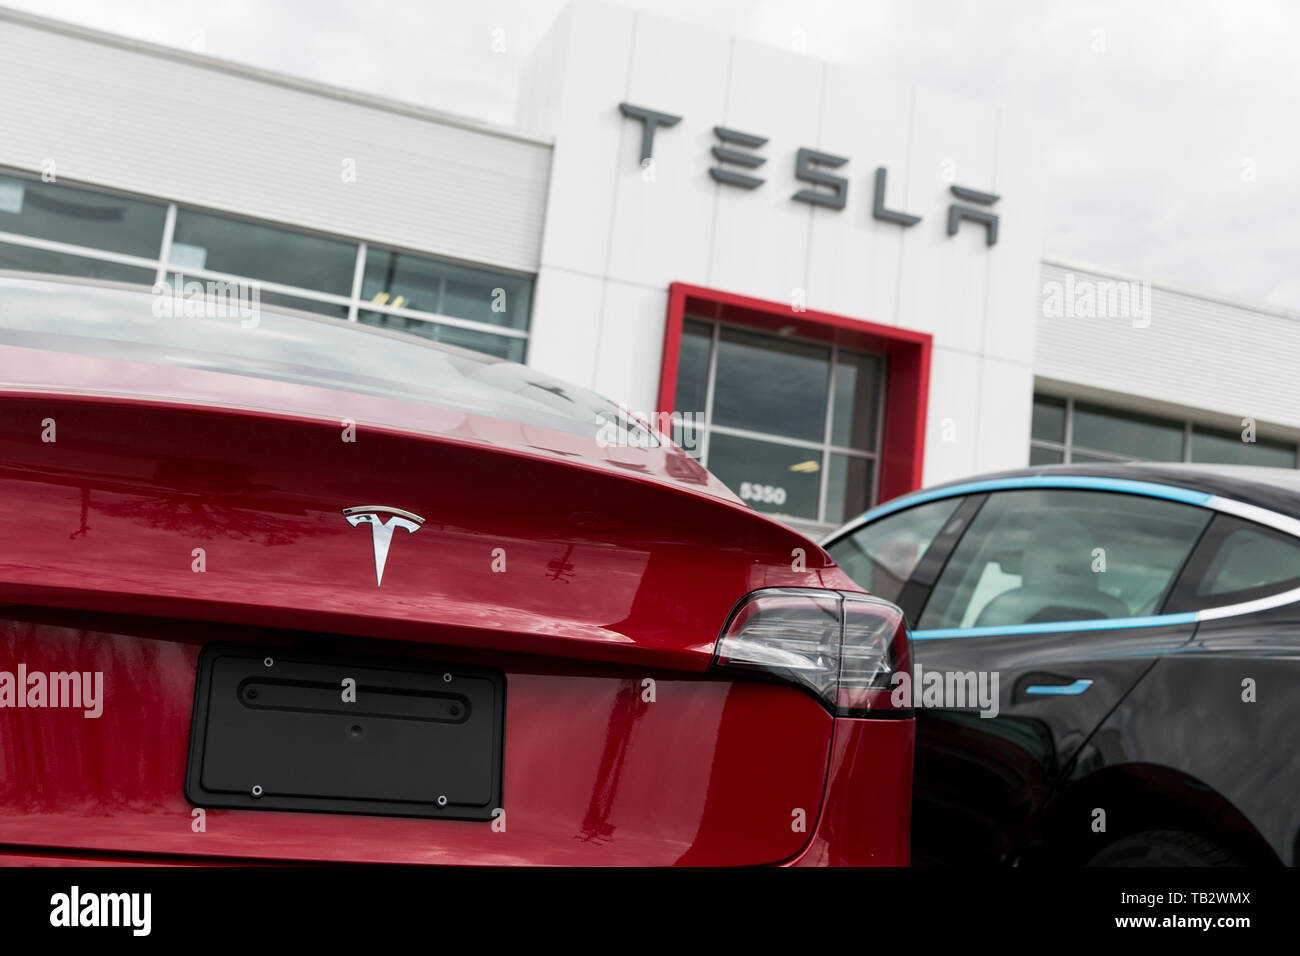 Un logo affiche à l'extérieur d'un concessionnaire de voiture Tesla avec le modèle 3 et le modèle S voitures dans le lot à Montréal, Québec, Canada, le 21 avril 2019. Banque D'Images